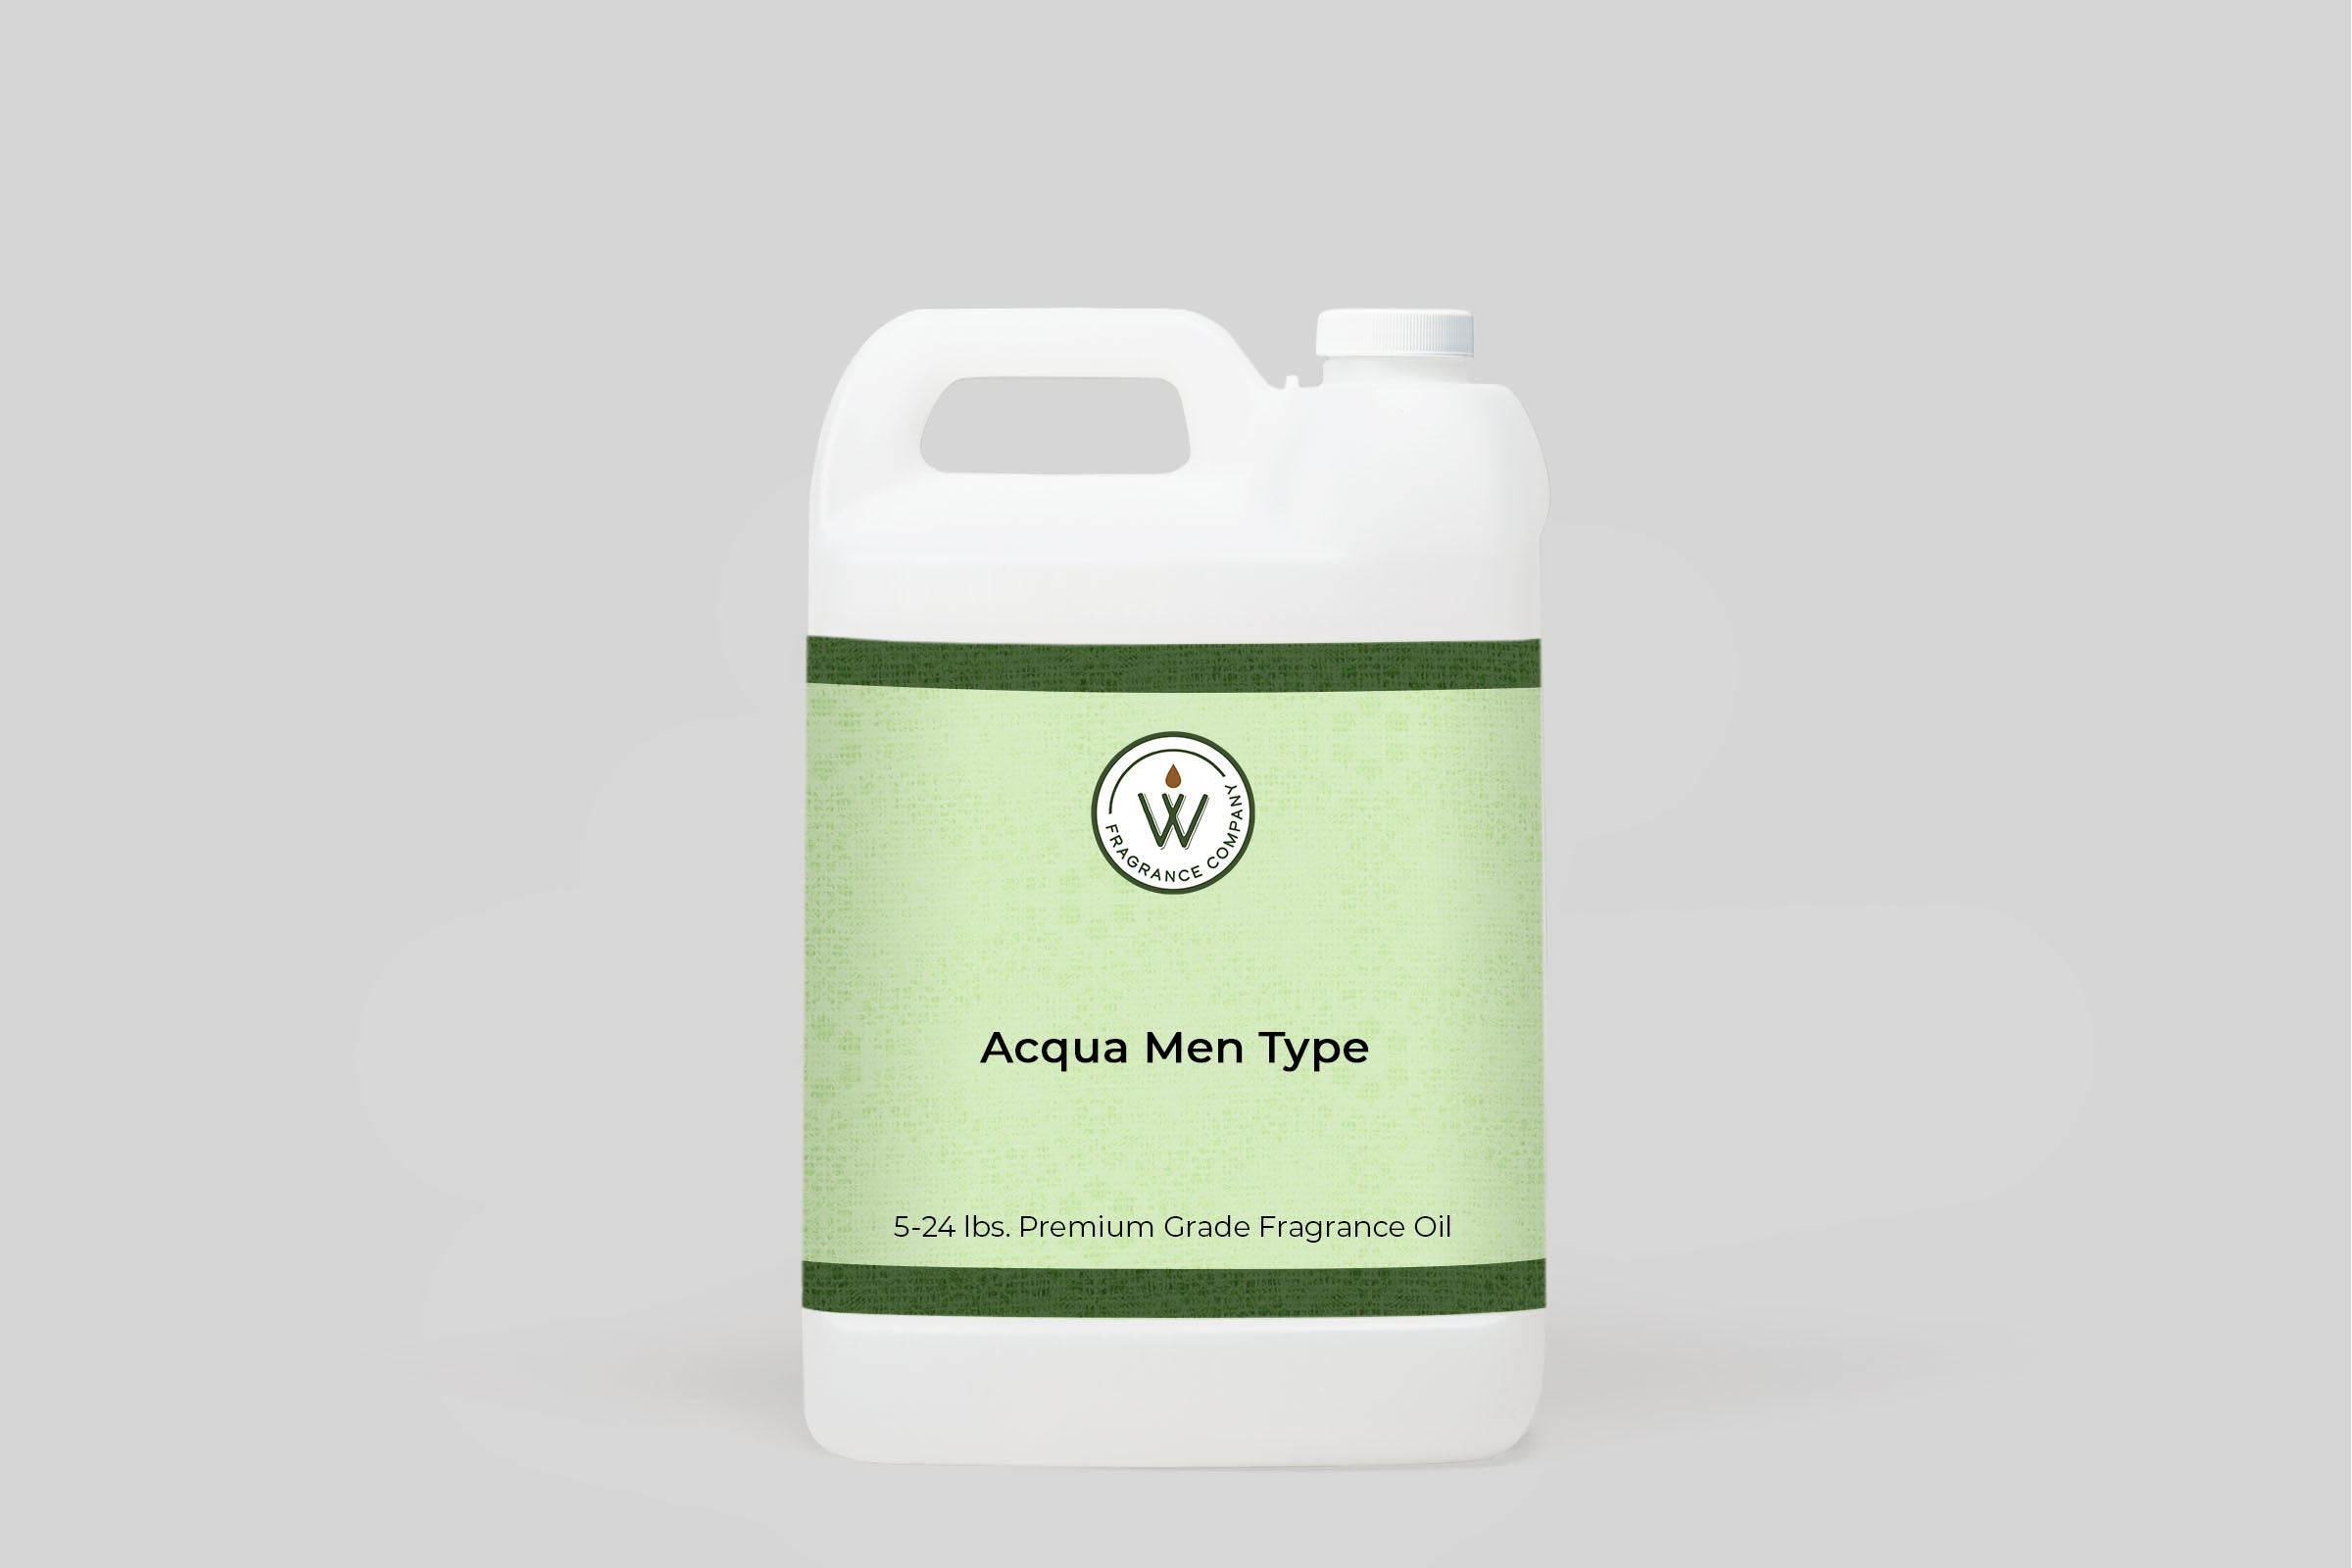 Acqua Men Type Fragrance Oil